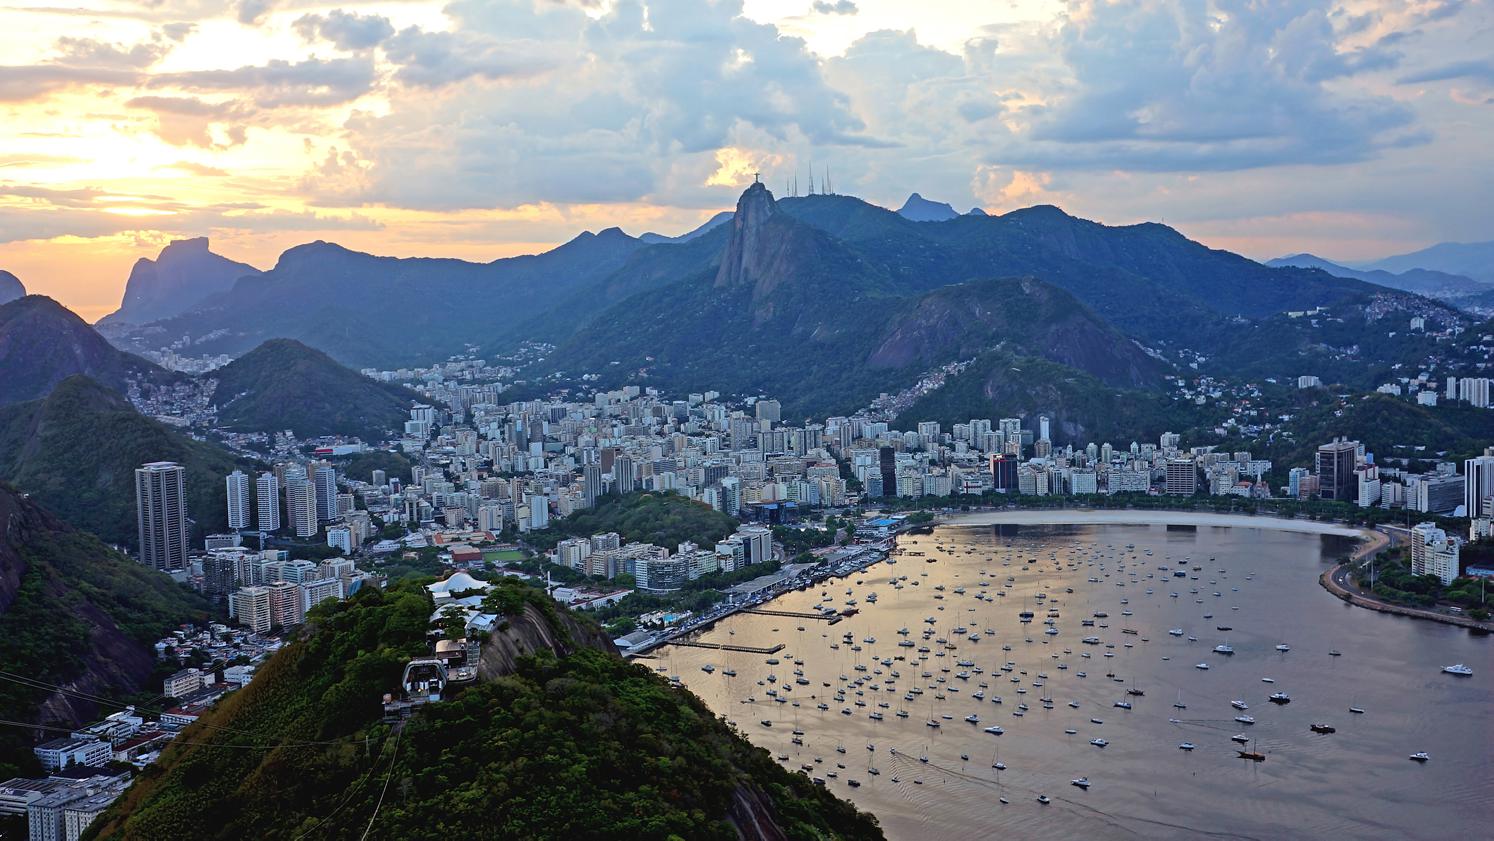 Aerial view of Rio de Janeiro, Brazil.